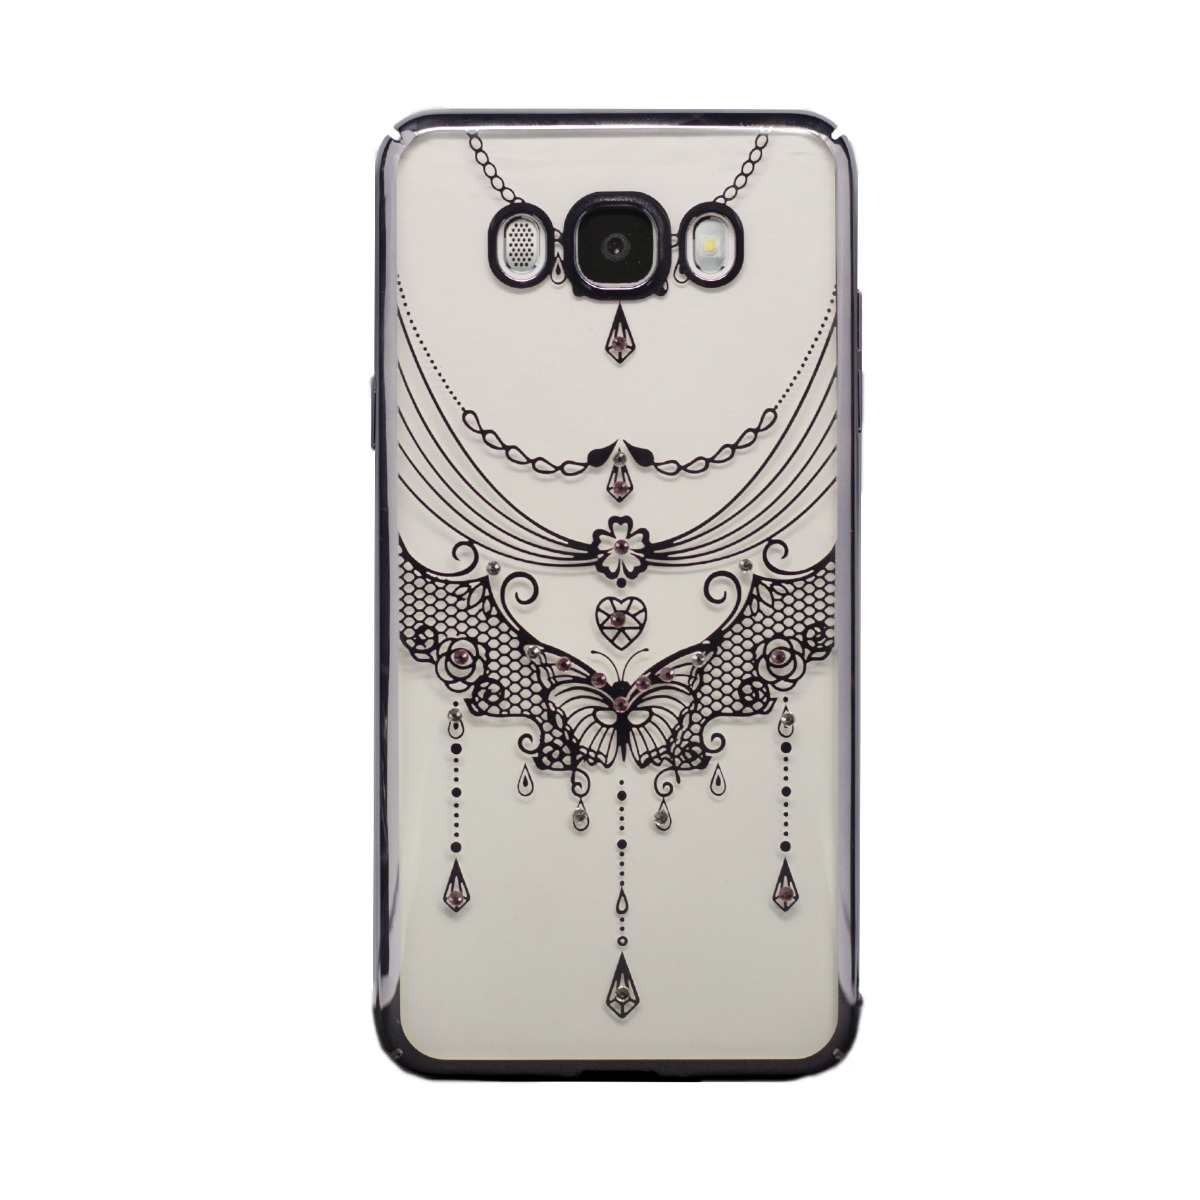 Carcasa hard fashion Samsung Galaxy J7 2016, Silver Butterfly thumb